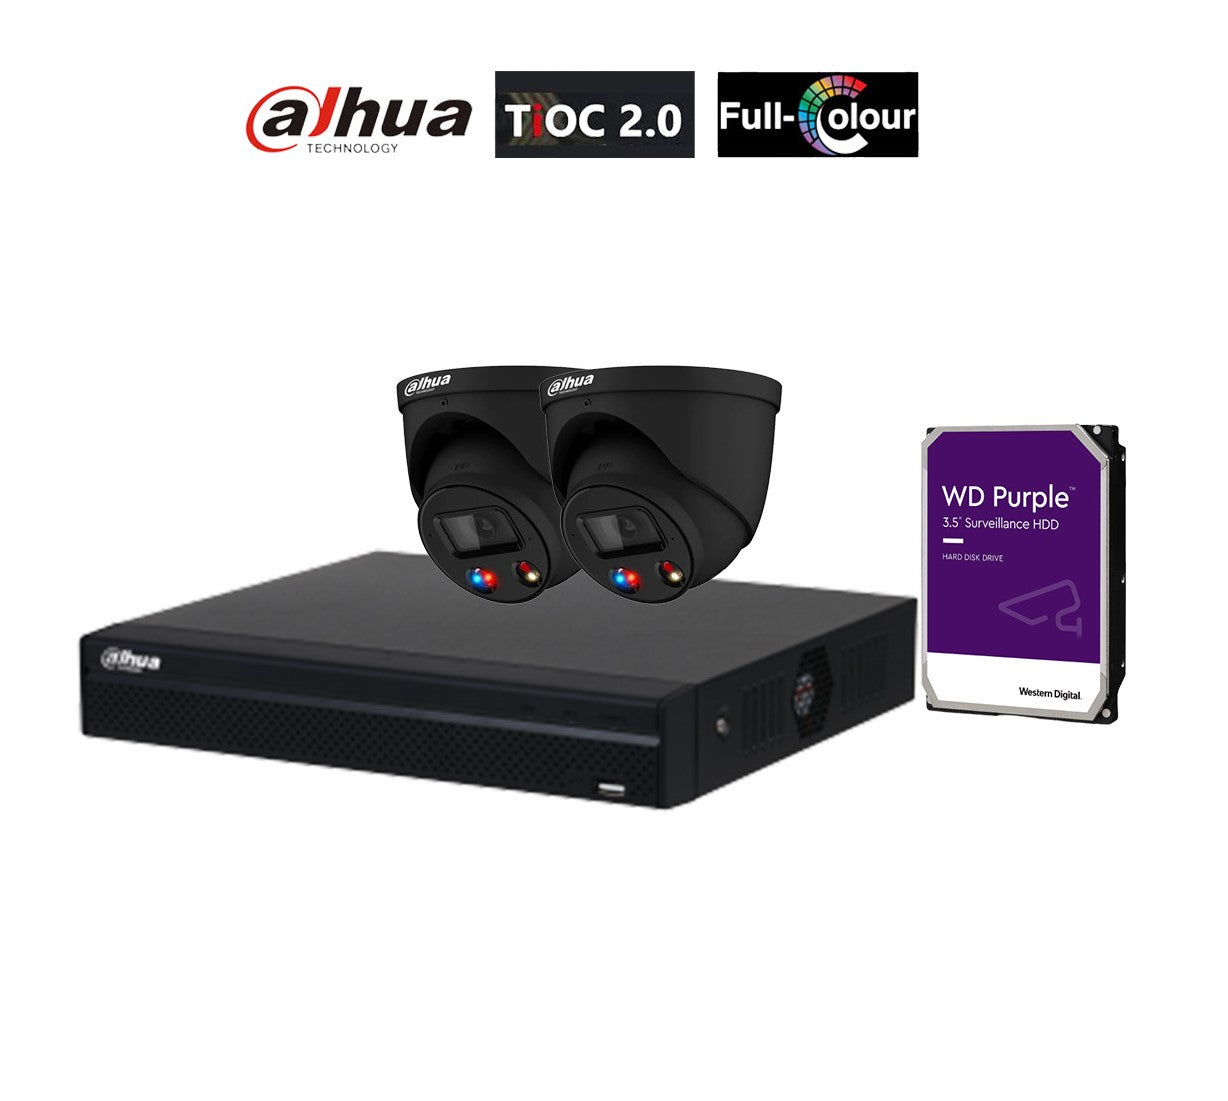 大华 AI TiOC 2x 6MP CCTV 摄像机（黑色）DH-IPC-HDW3649H-AS-PV-ANZ，4CH WizSense NVR DHI-NVR4104HS-4P 套件